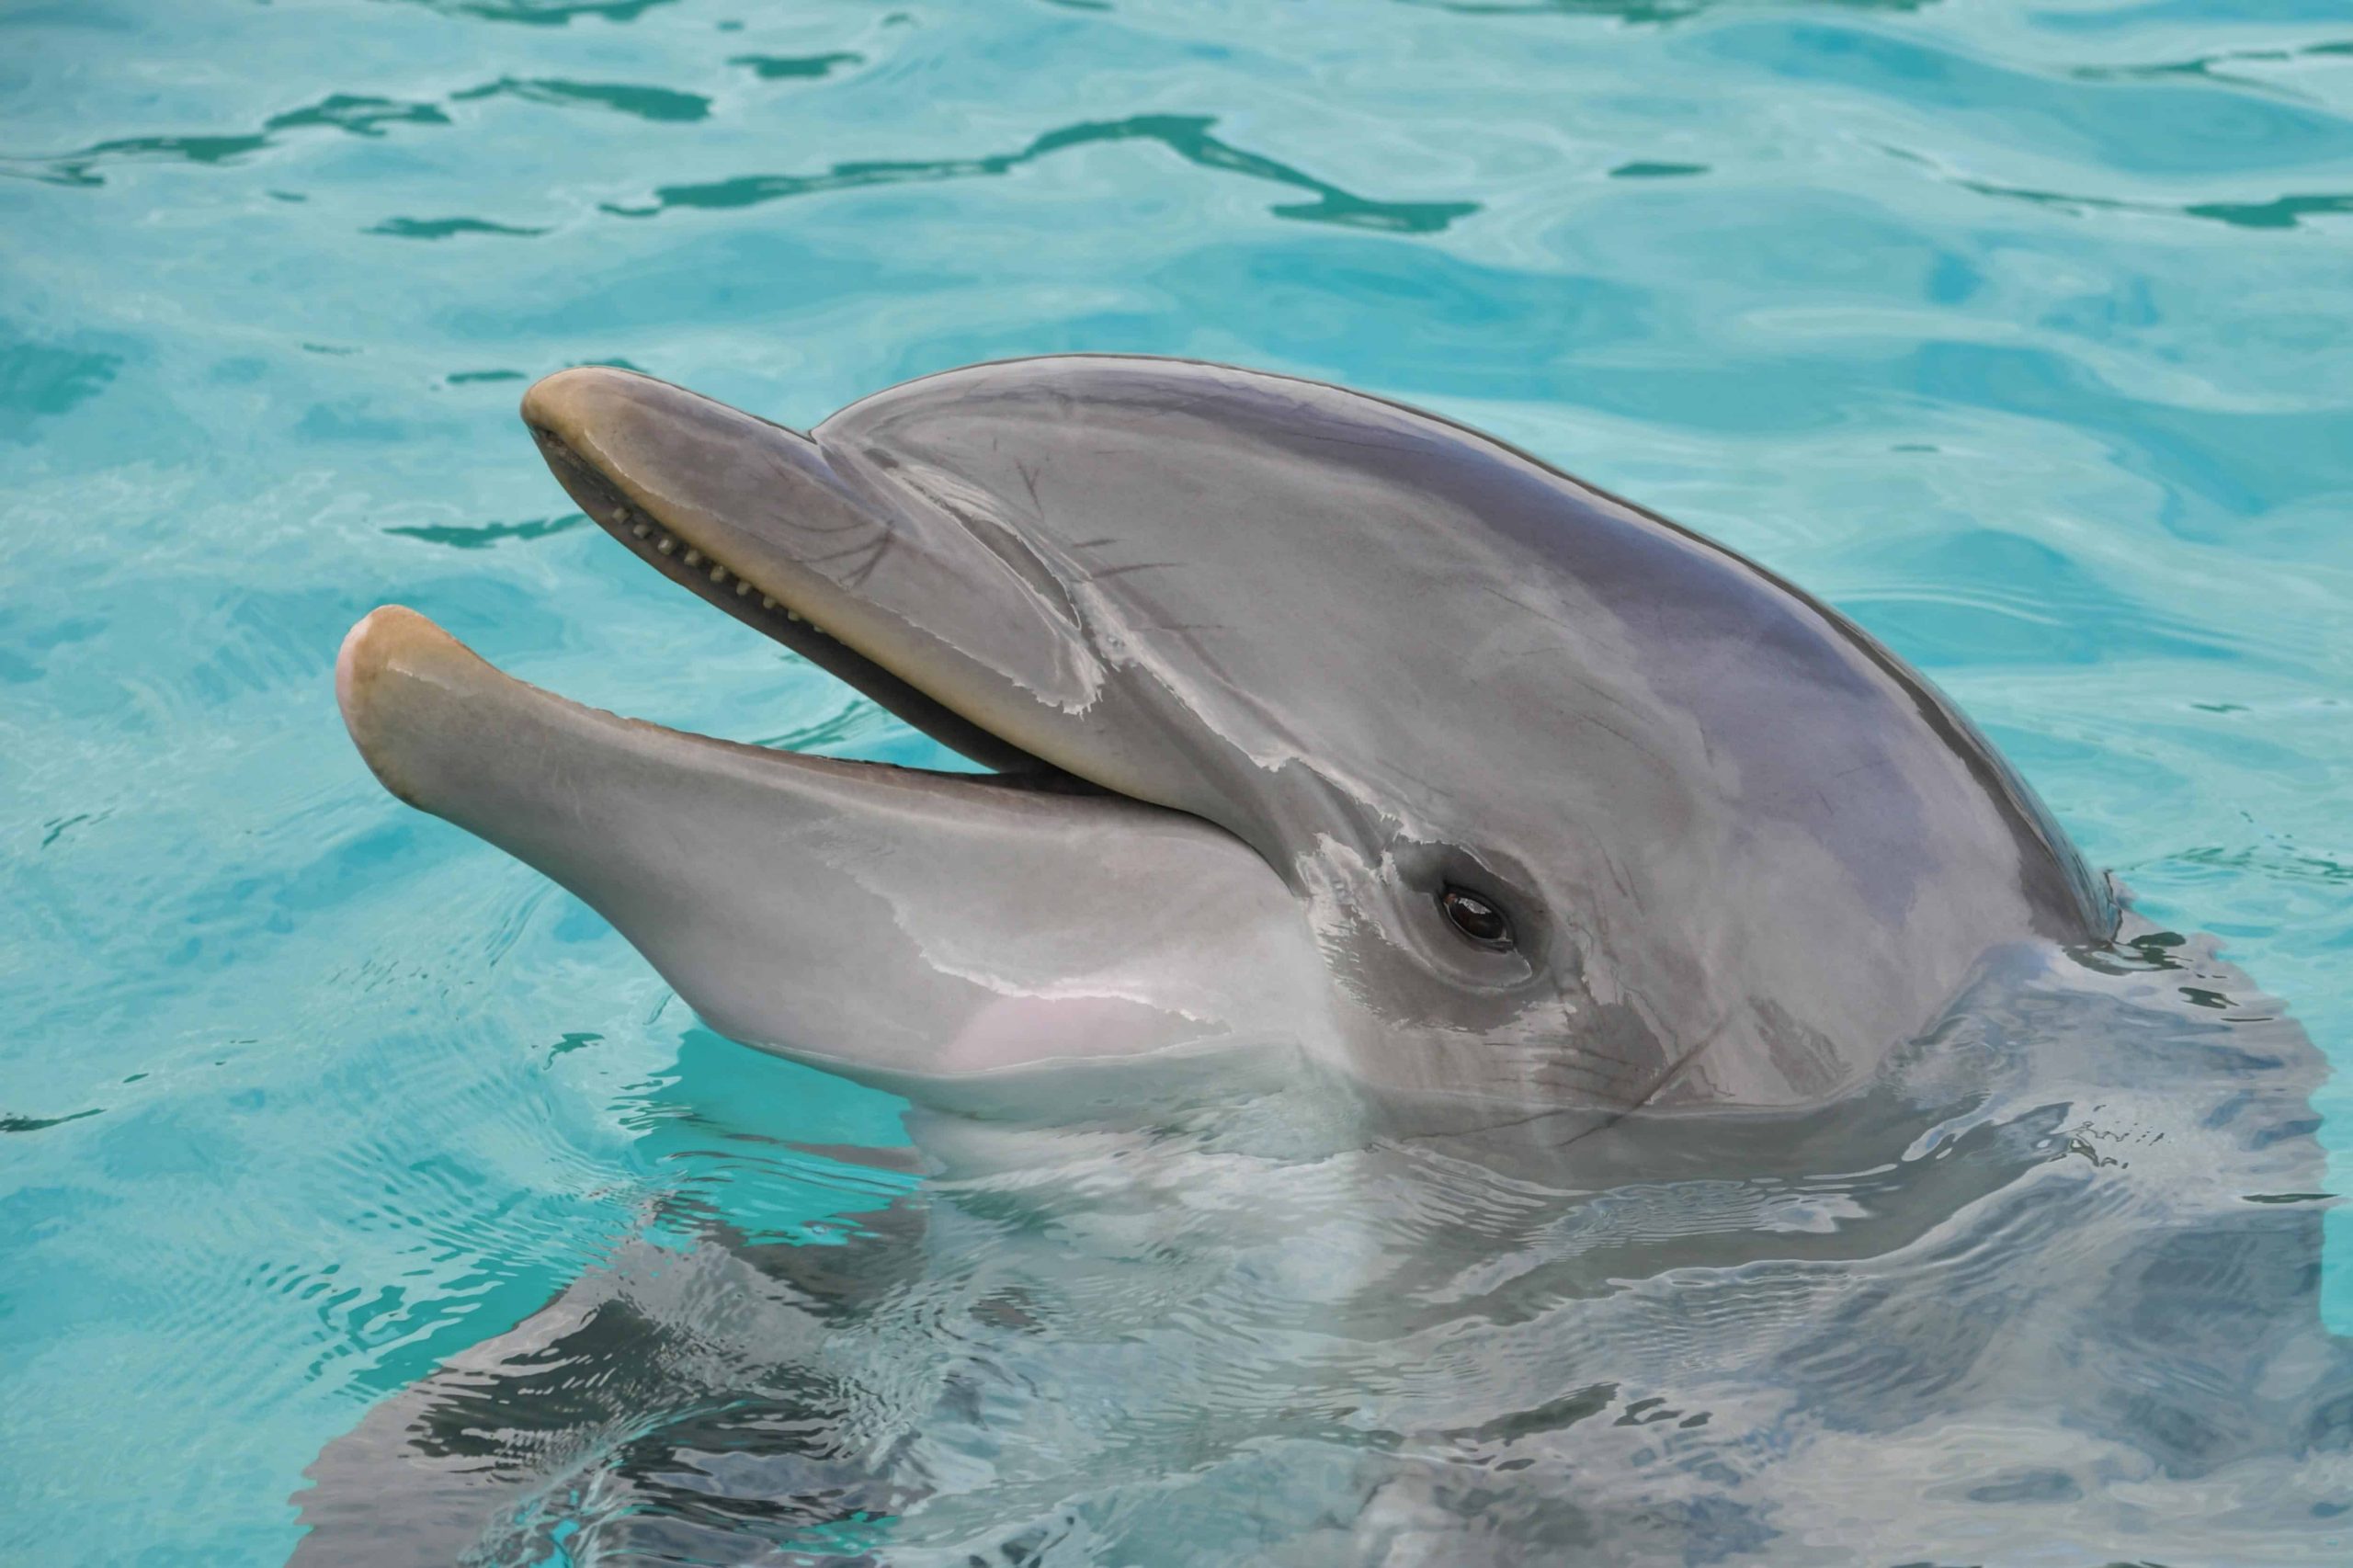 Kostenlose Bild: Wasser, Unterwasser, Delphin, Ozean, Meer über Delphine Bilder Kostenlos